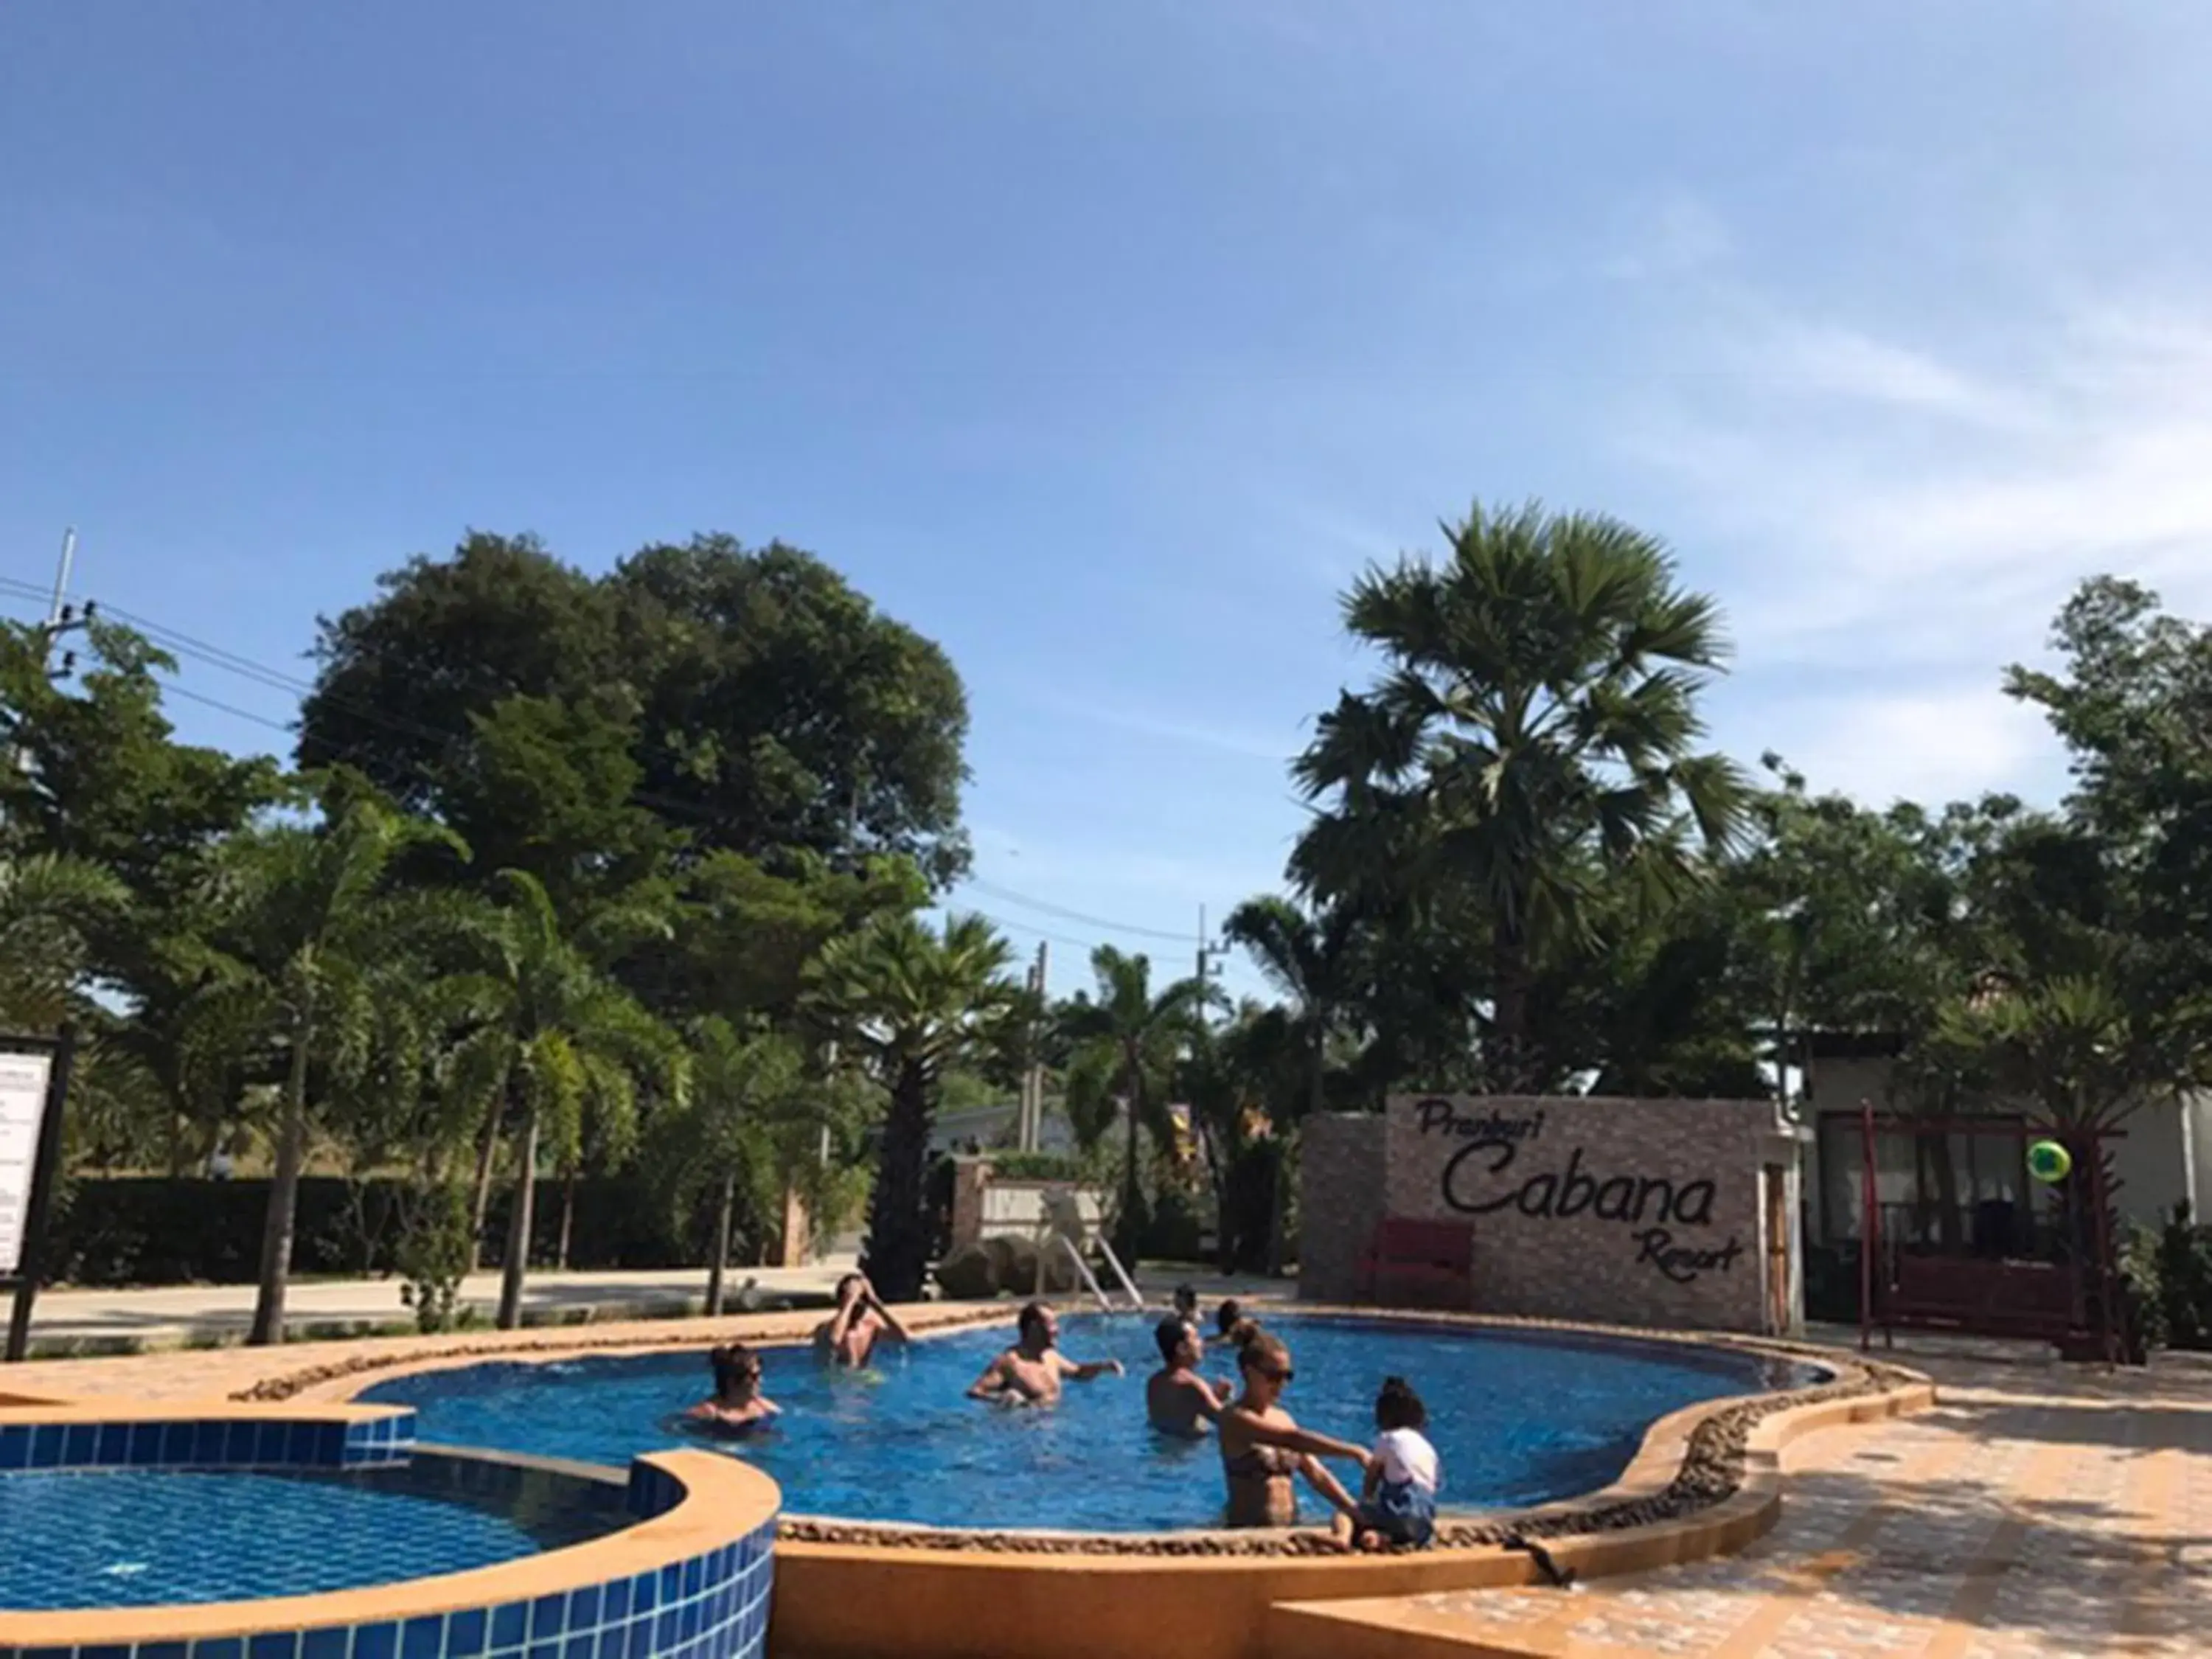 Swimming Pool in Pranburi Cabana Resort